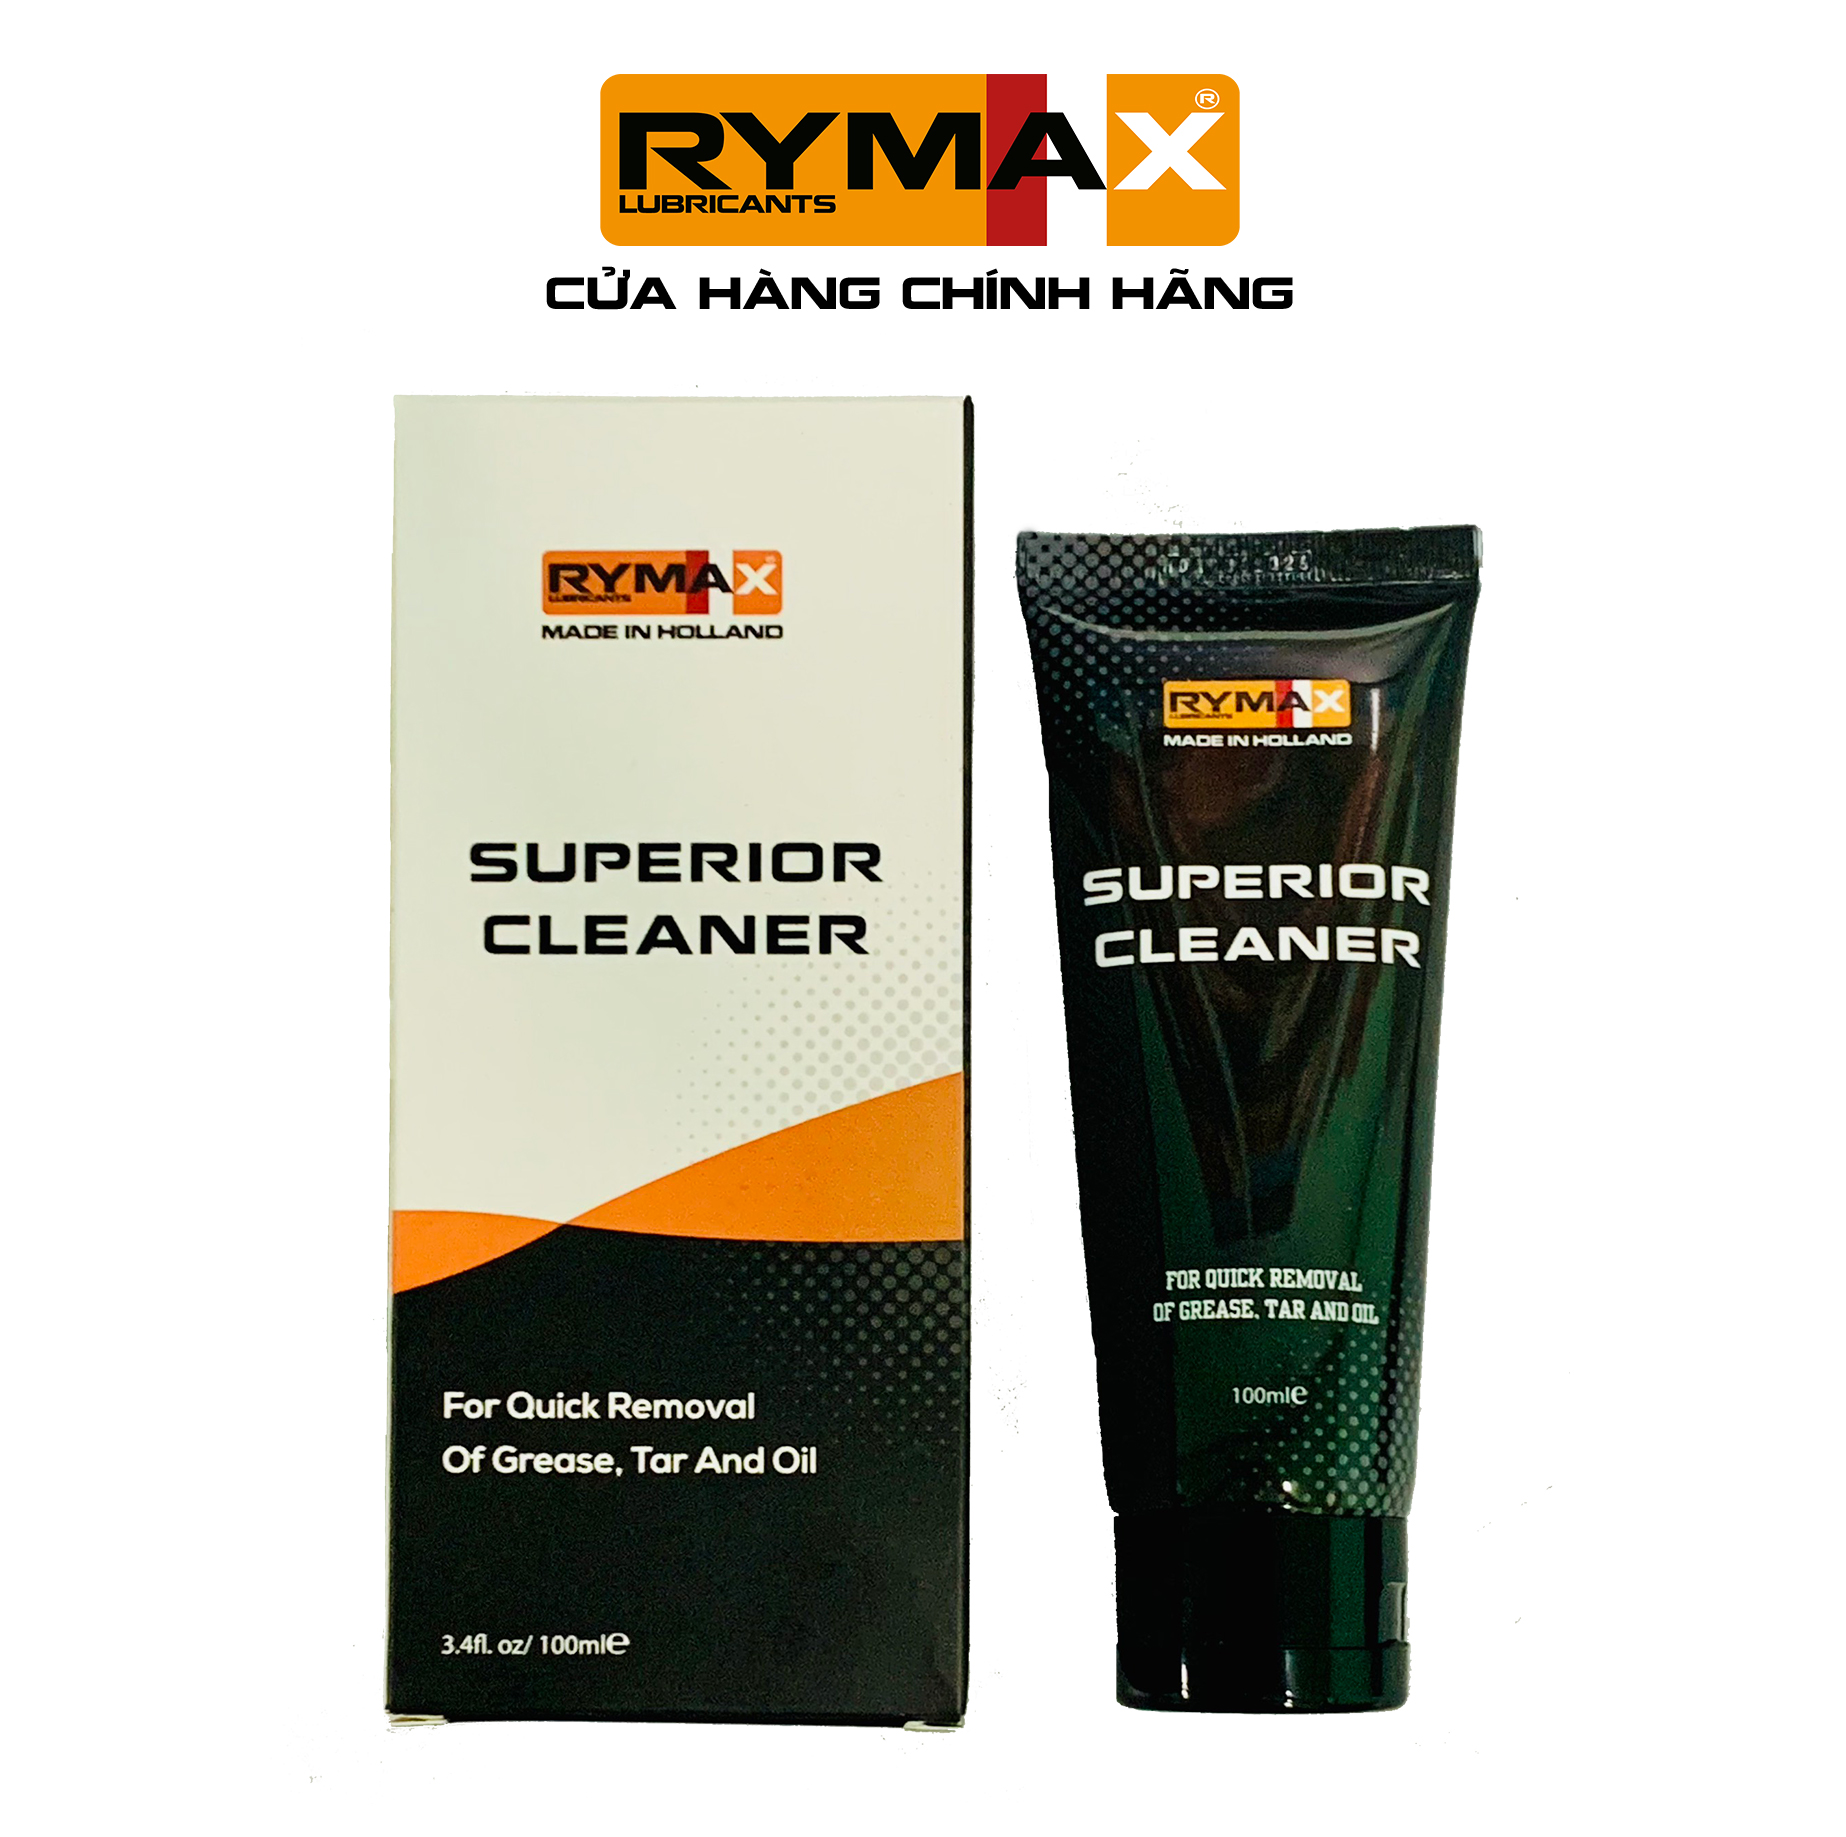 Dung dịch chuyên tẩy rửa dầu mỡ, vết bẩn cứng đầu cao cấp Rymax Hand Cleaner - Chai 100ml, 600ml, 4.5L